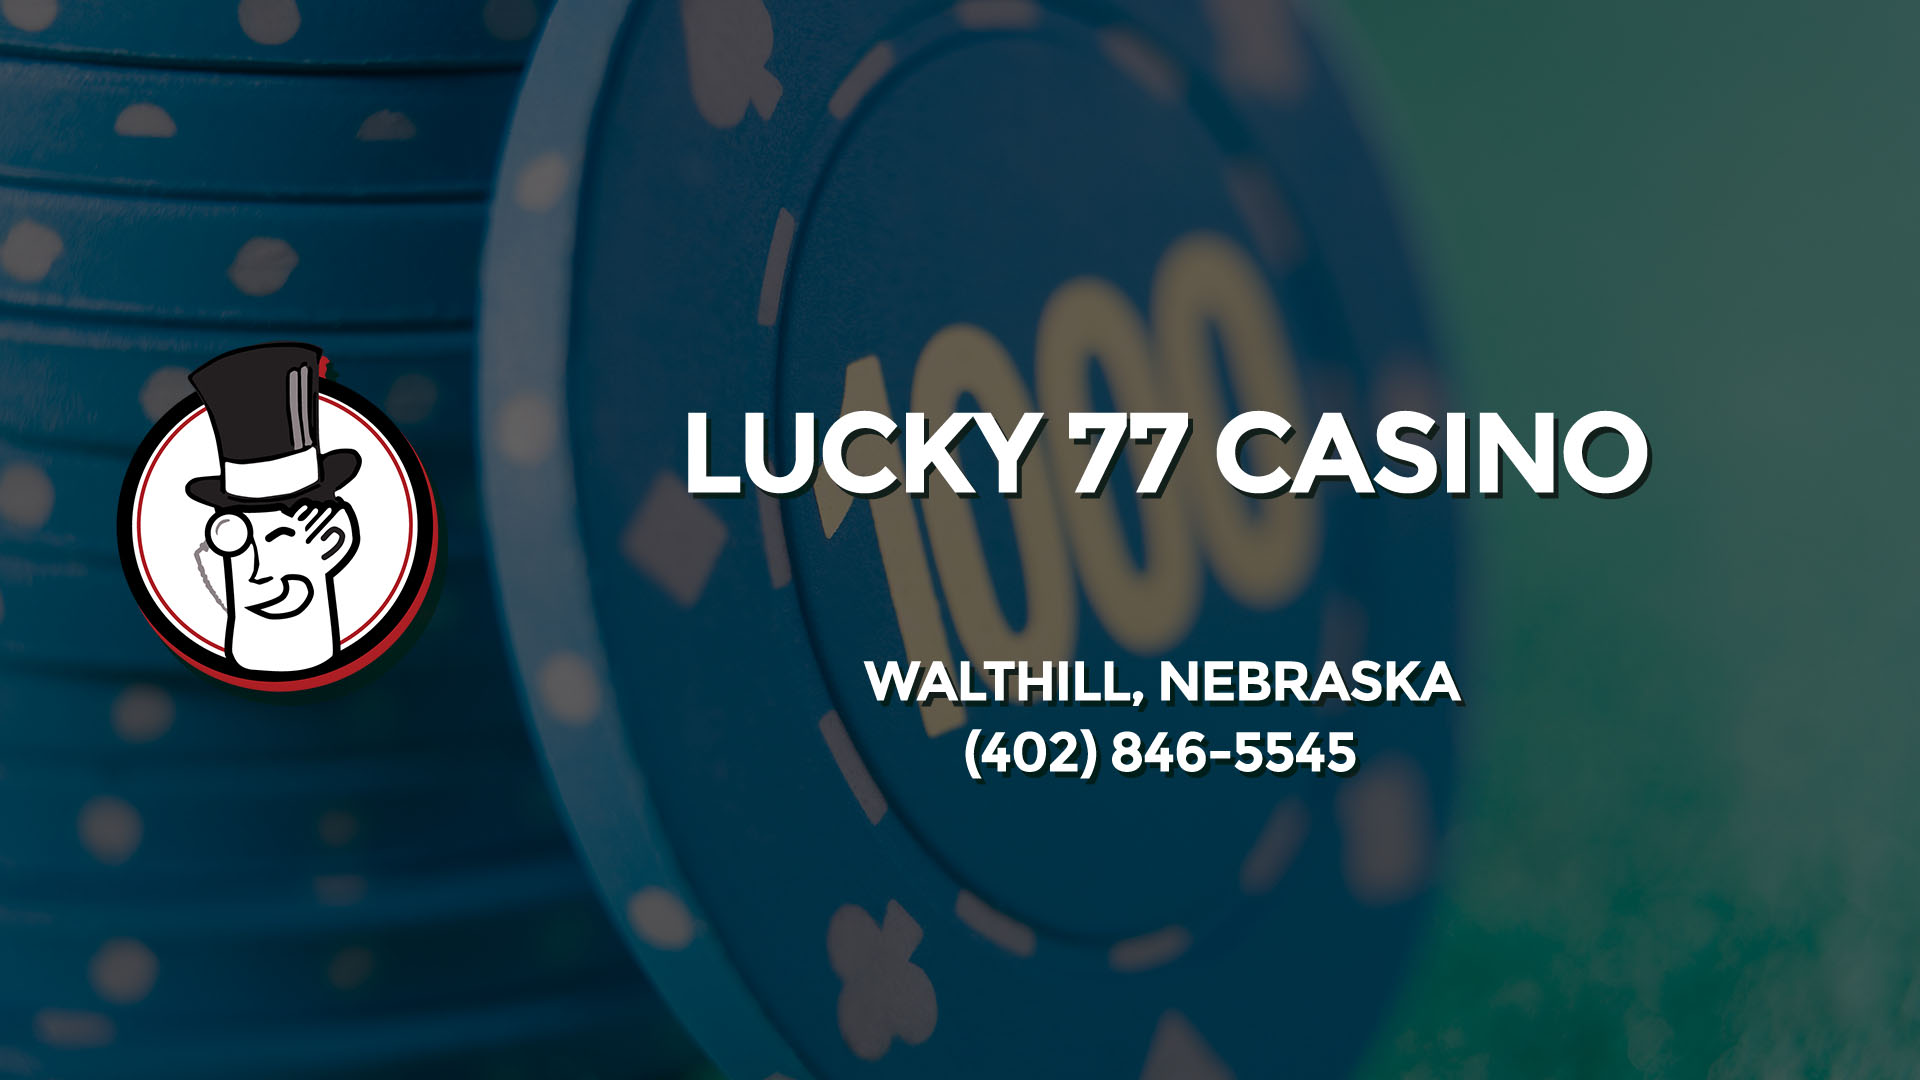 Lucky 77 Casino Walthill Nebraska